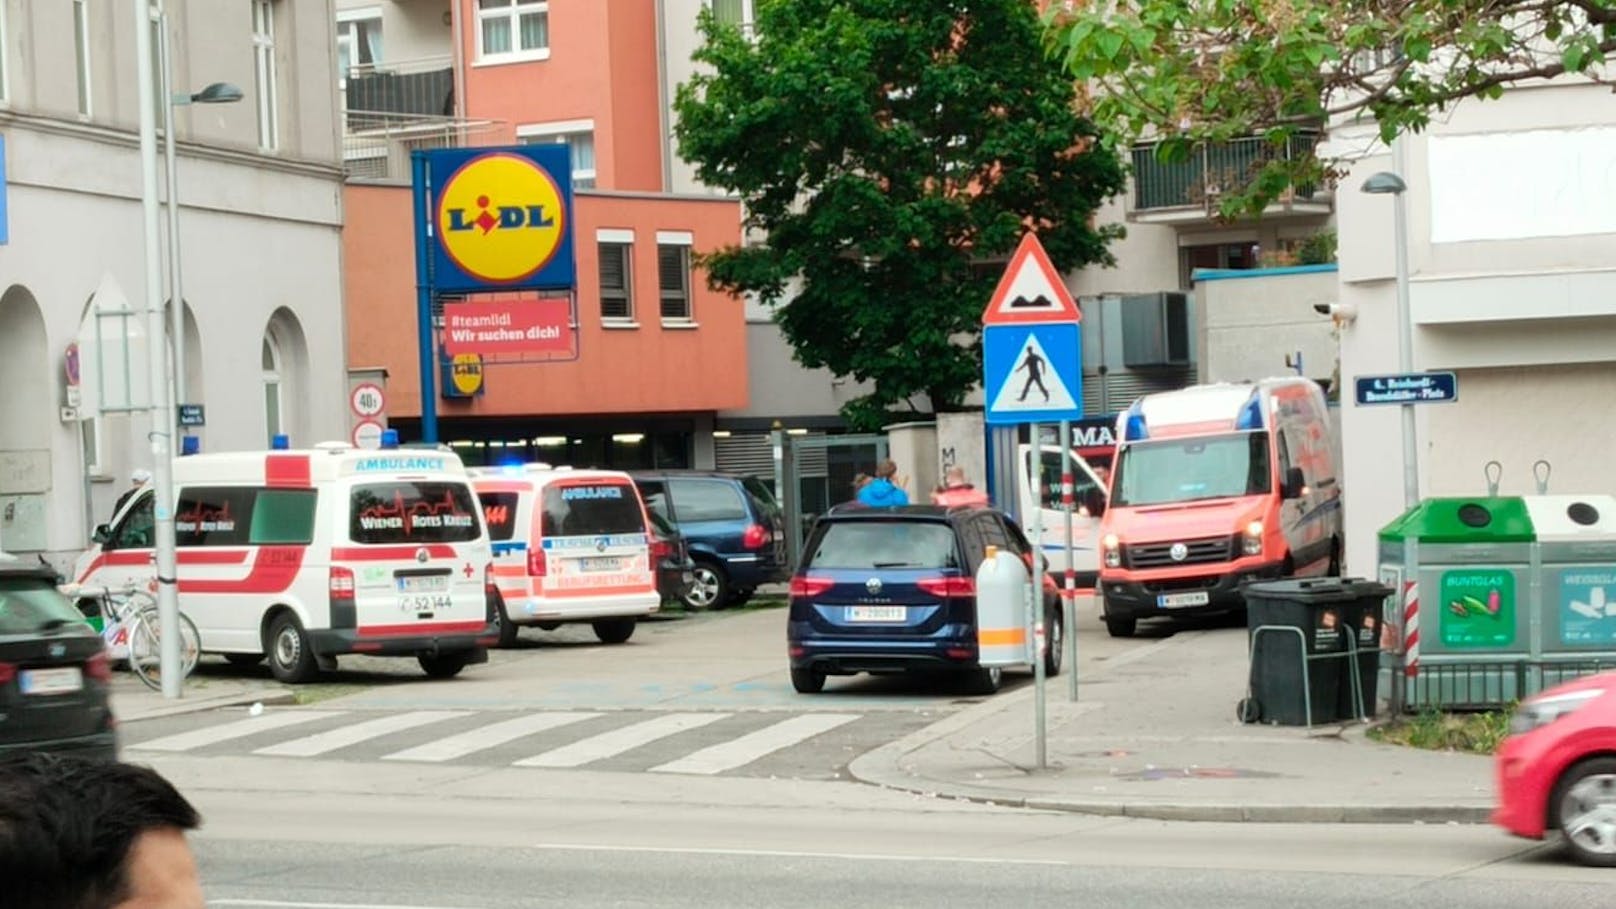 Messerstich in Wien – Mann bei Streit schwer verletzt